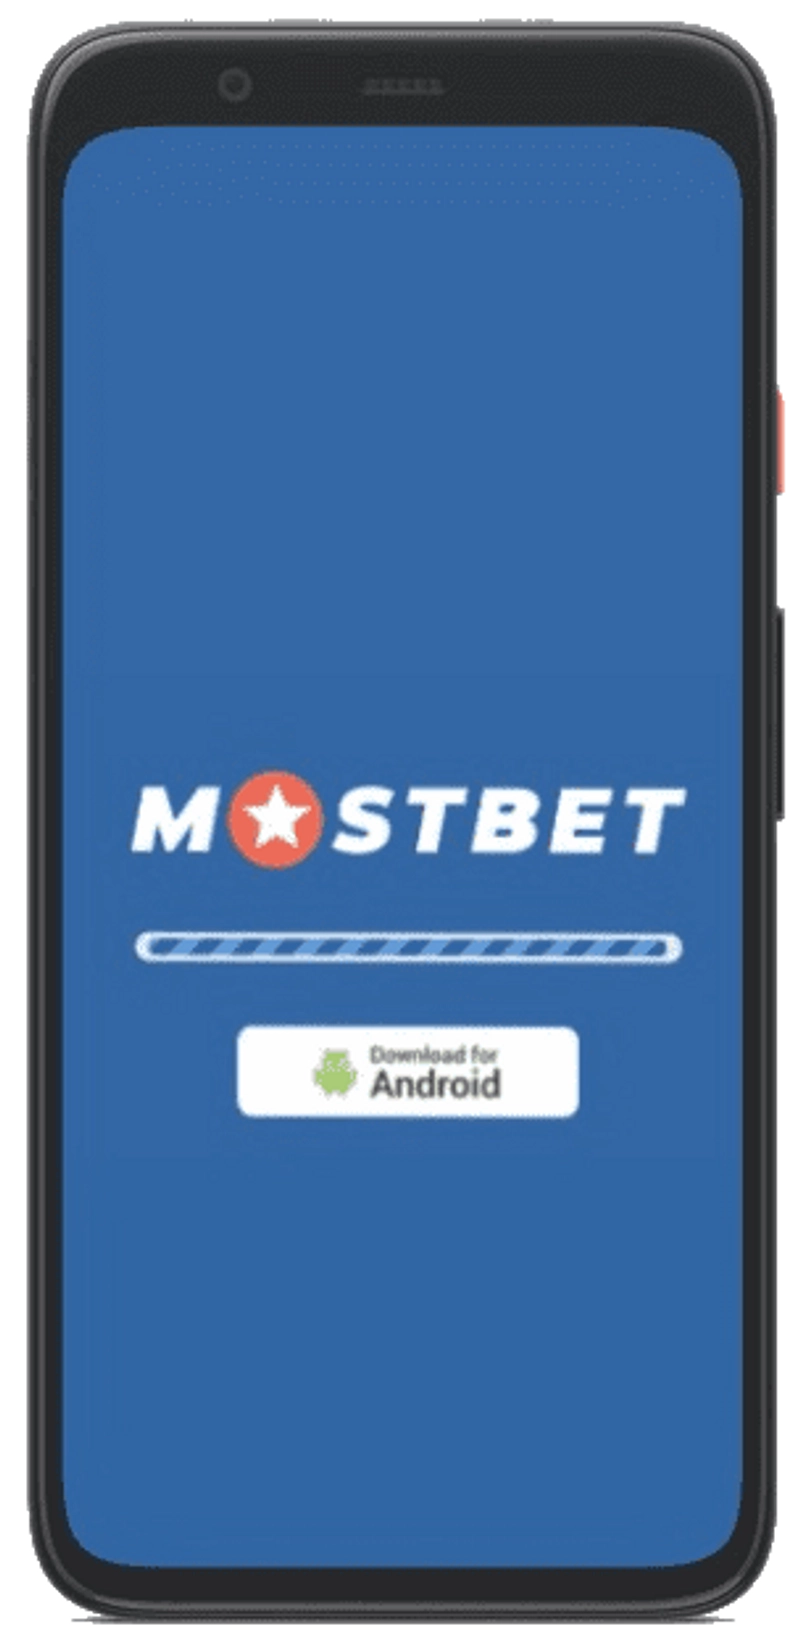 descarga de la aplicación mostbet para android